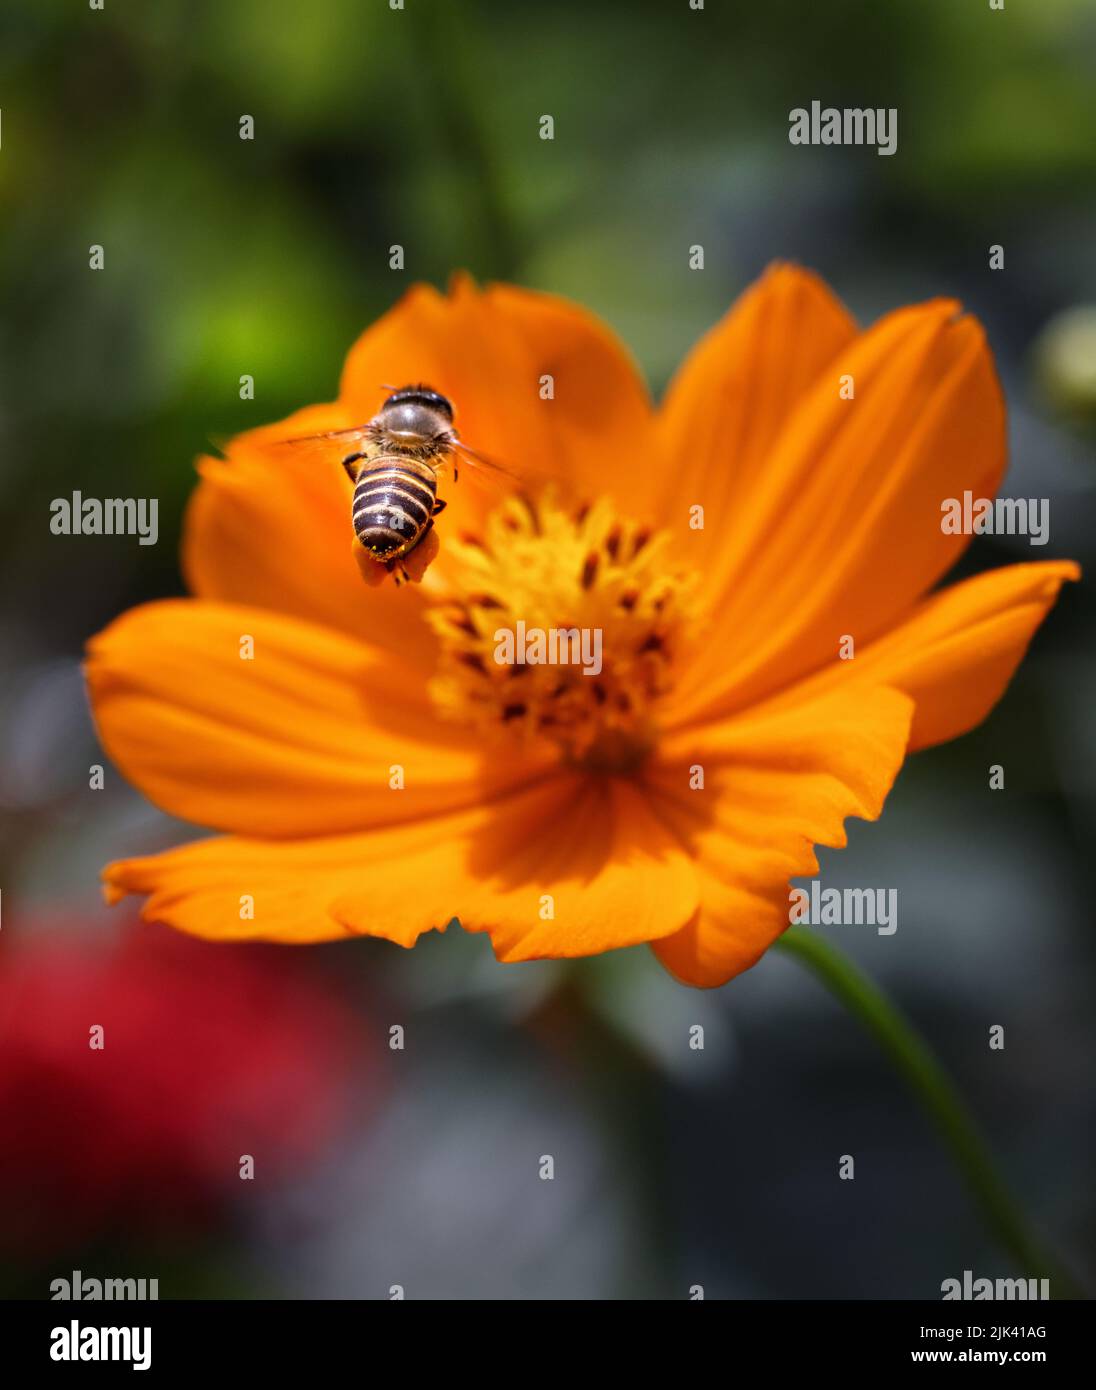 Fliegende Honigbiene sammelt Pollen aus der Blüte. Dieses Foto wurde aus Bangladesch aufgenommen. Stockfoto